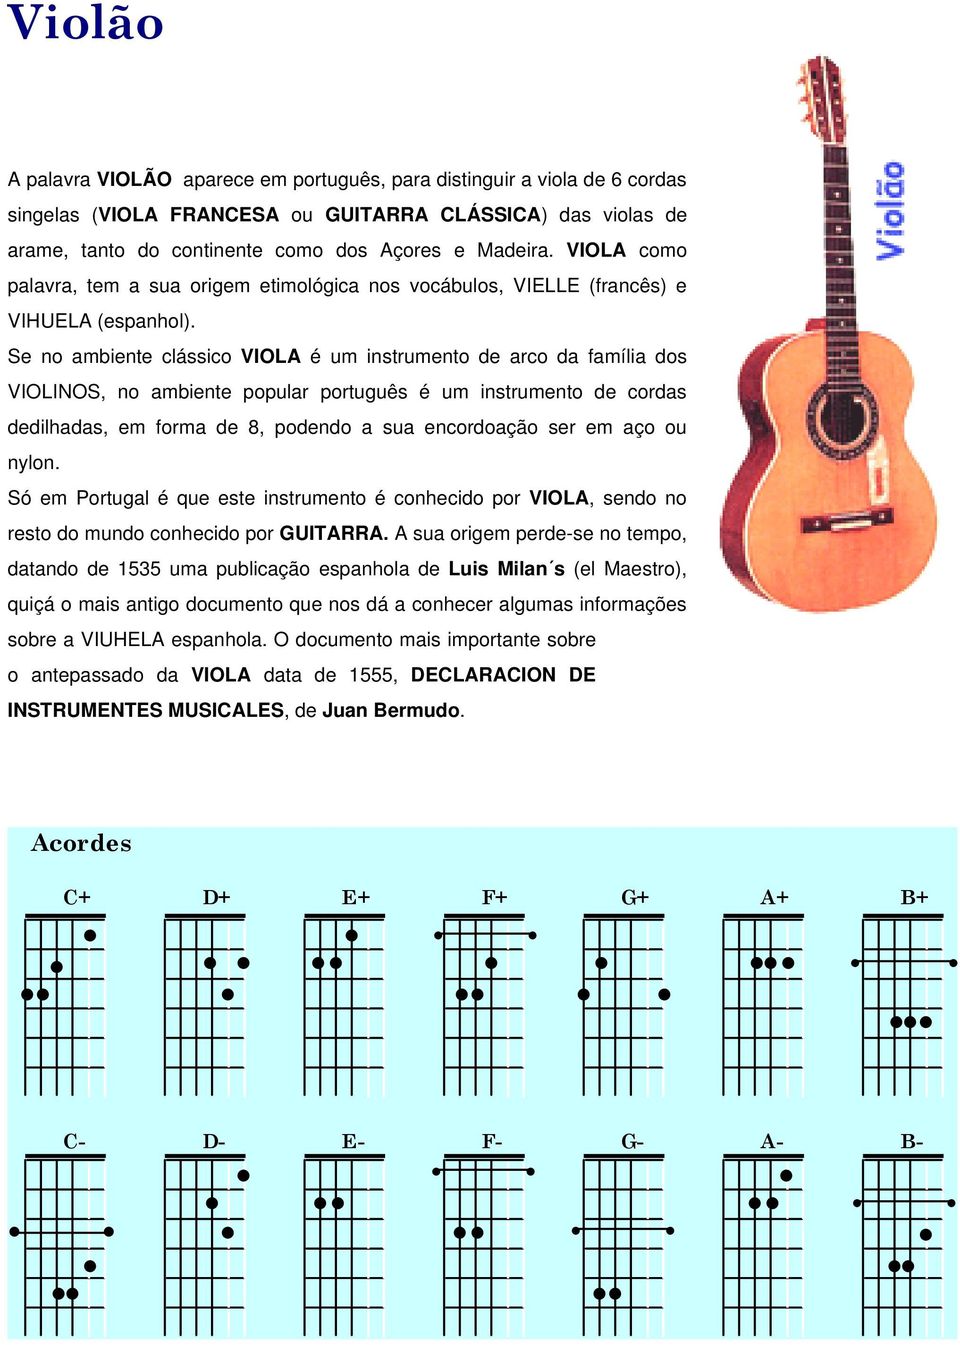 Se no ambiente clássico VIOLA é um instrumento de arco da família dos VIOLINOS, no ambiente popular português é um instrumento de cordas dedilhadas, em forma de 8, podendo a sua encordoação ser em